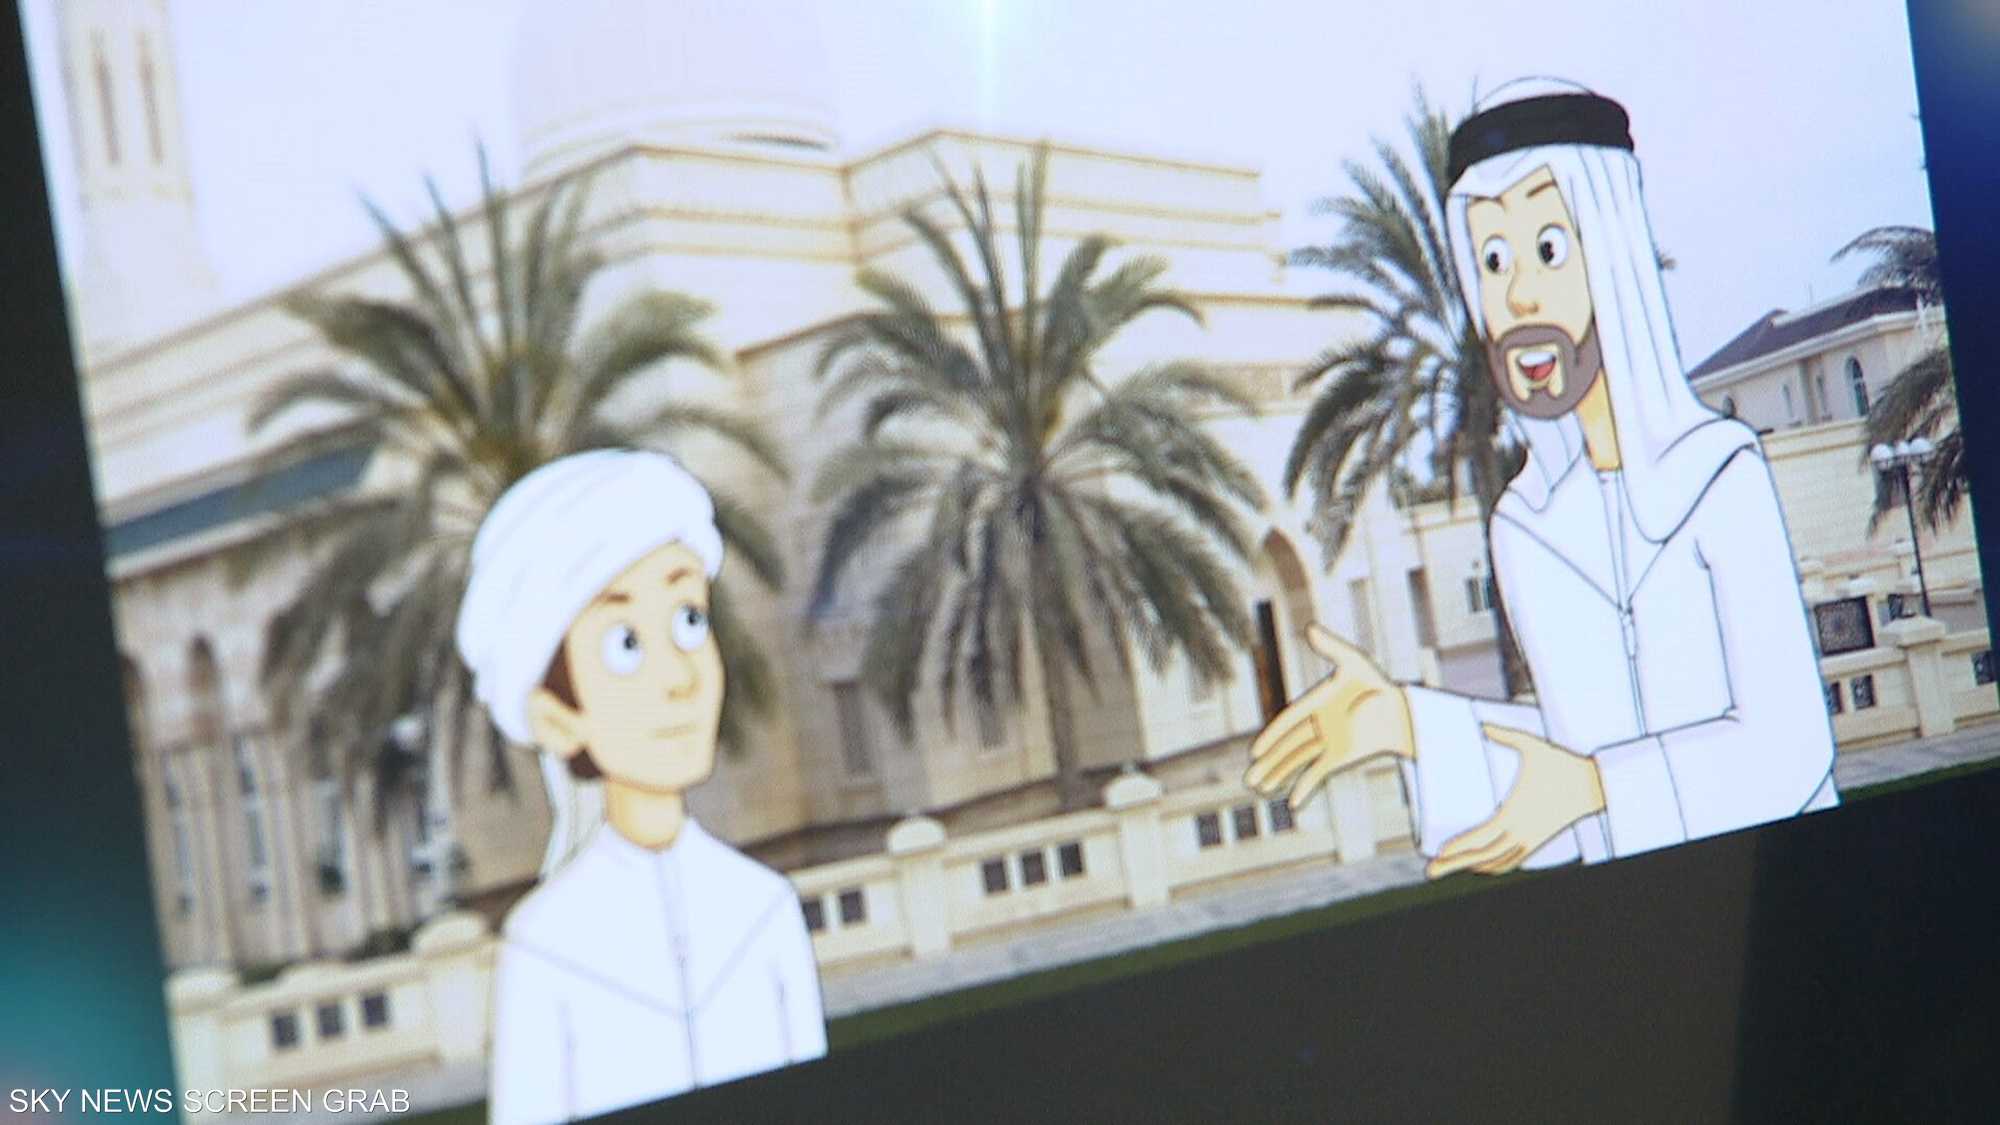 الرسوم المتحركة جسرا لإيصال المعلومات للأطفال